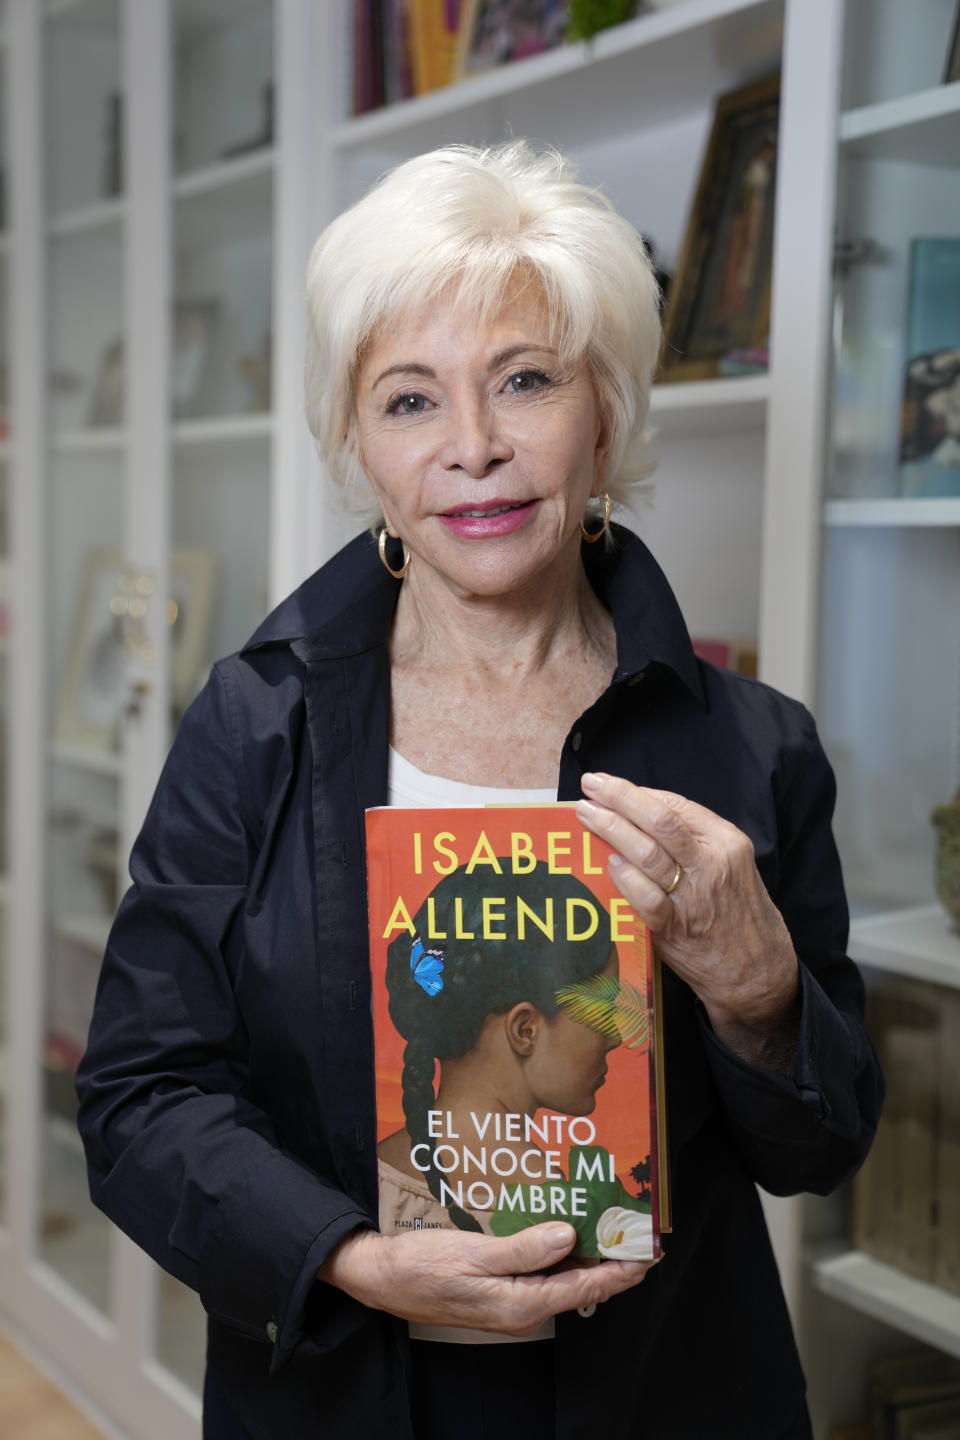 La autora Isabel Allende posa en su estudio en Sausalito, California, el 12 de abril de 2023, para promover su más reciente libro “El viento conoce mi nombre”. (Foto AP/Eric Risberg)